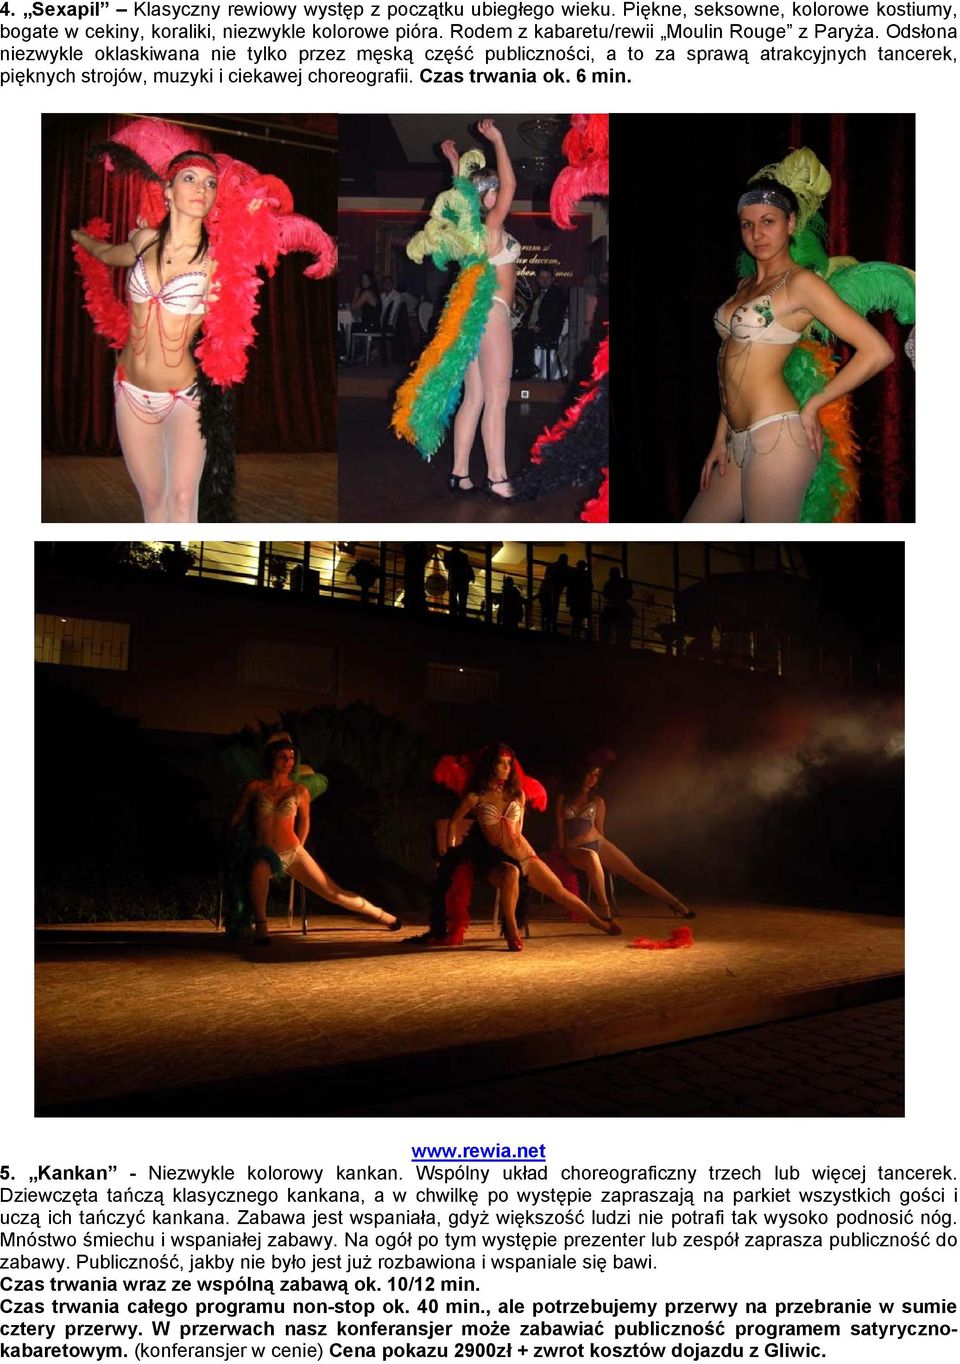 Kankan - Niezwykle kolorowy kankan. Wspólny układ choreograficzny trzech lub więcej tancerek.